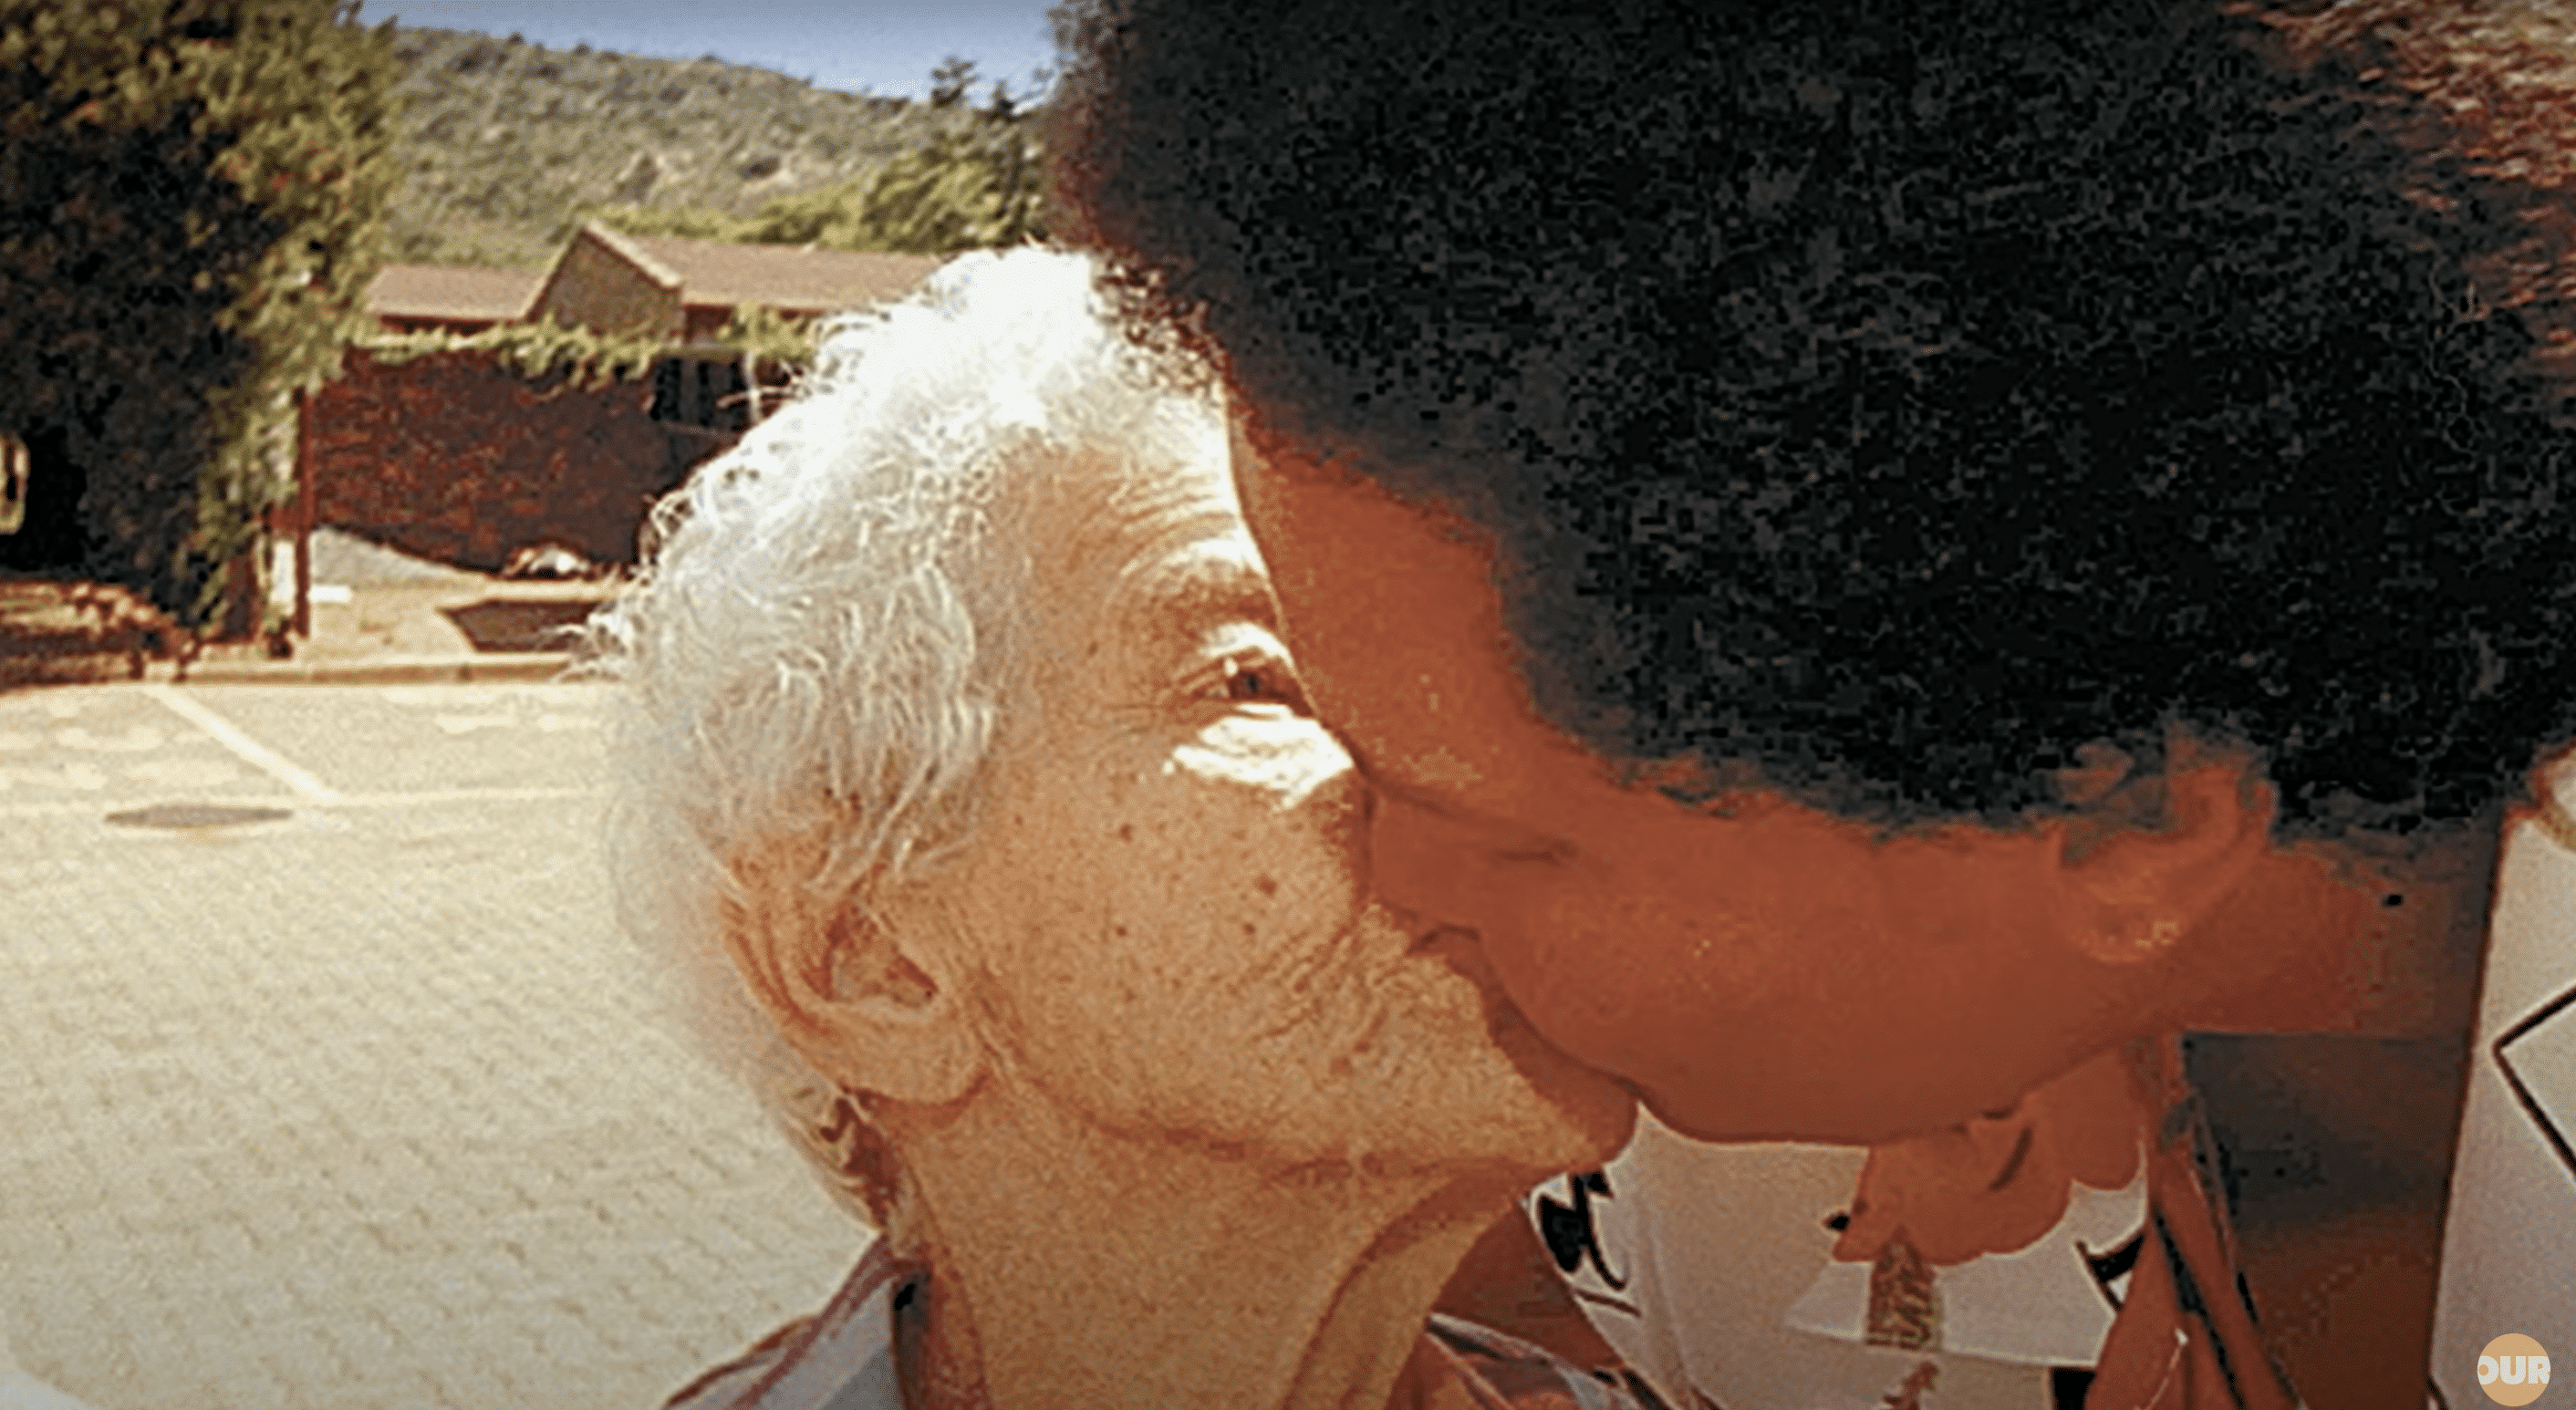 Sandra embrasse tendrement sa mère lors de leurs retrouvailles. | Source : YouTube.com/Our Life